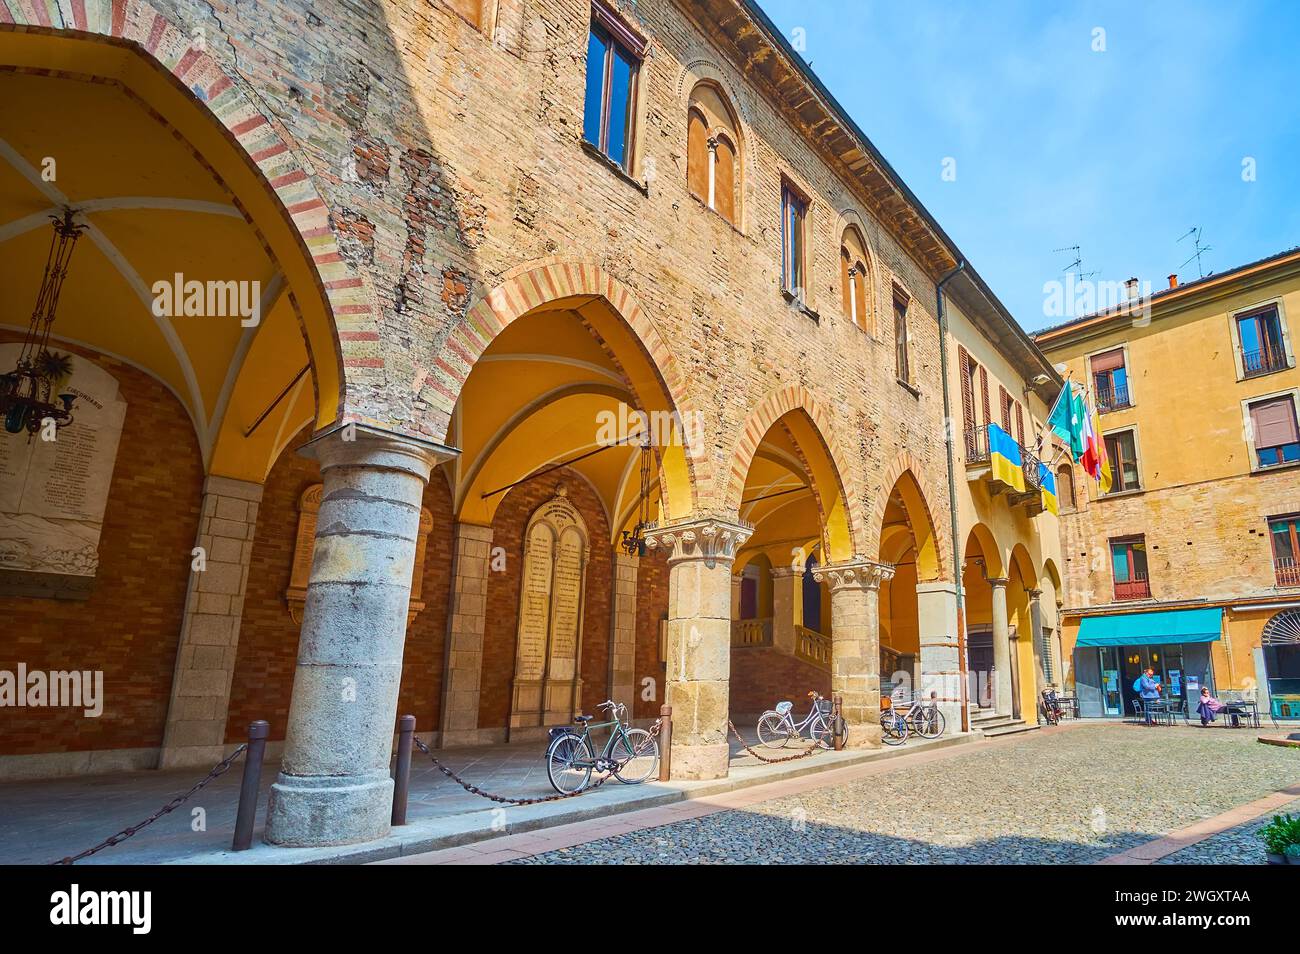 L'arcade médiévale en brique de pierre du Palazzo del Broletto depuis la Piazza Broletto, Lodi, Italie Banque D'Images